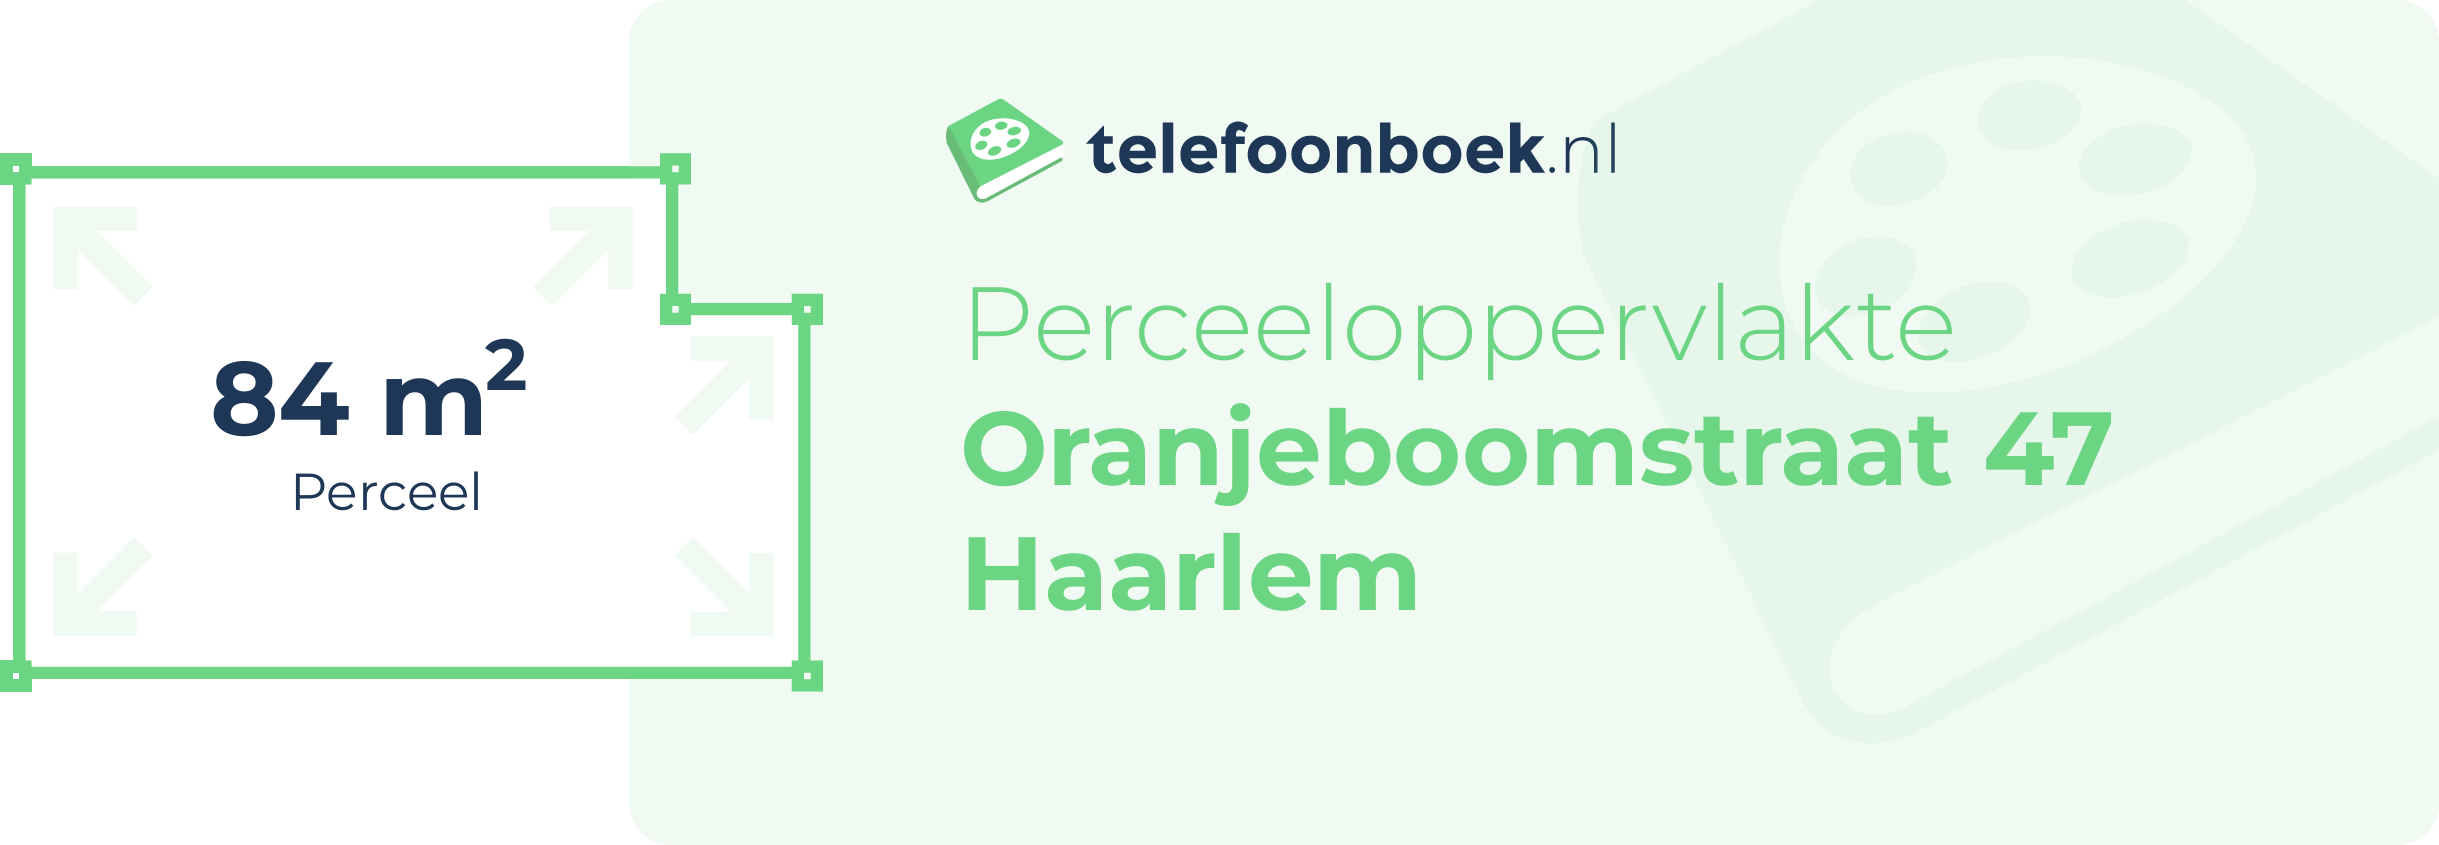 Perceeloppervlakte Oranjeboomstraat 47 Haarlem